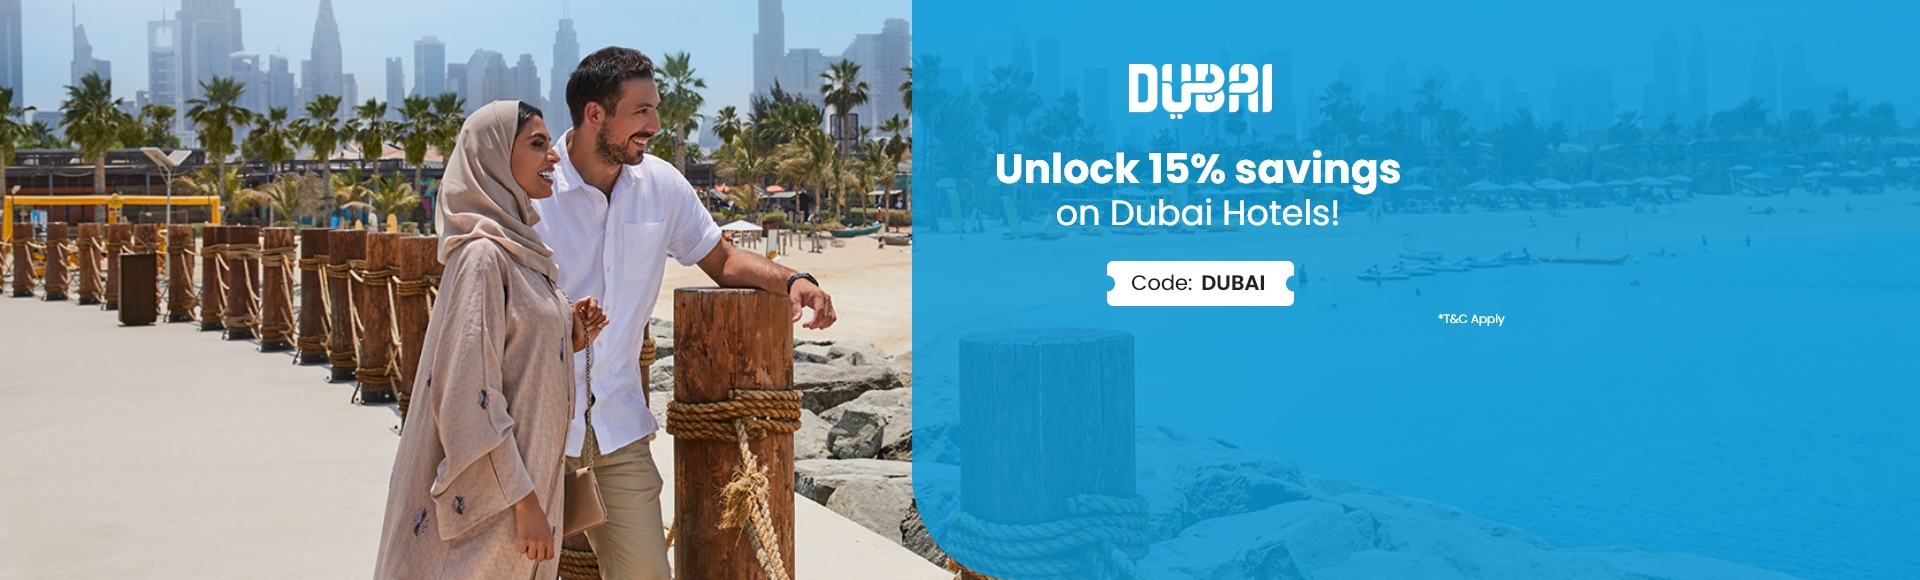 Dubai Special offer